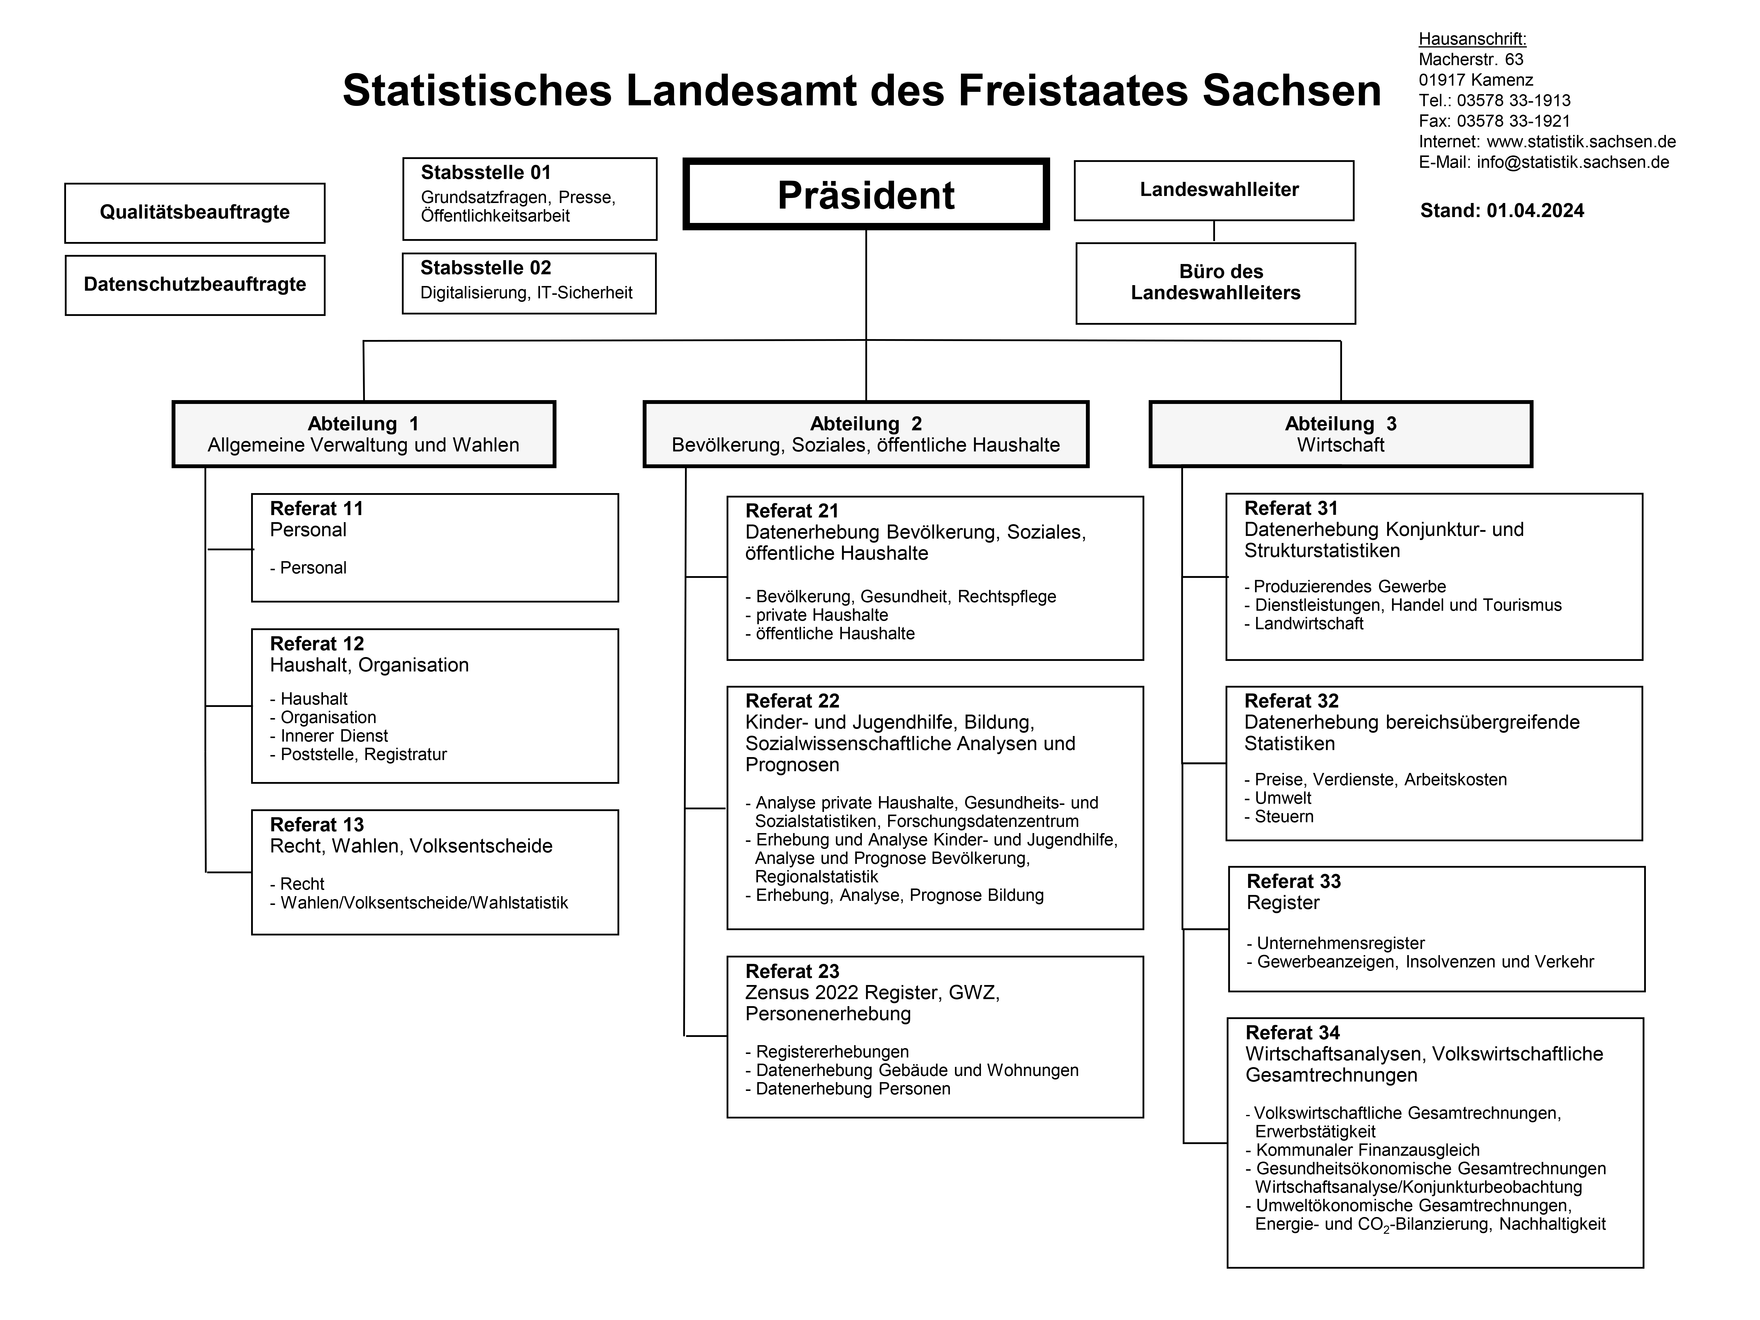 Organigramm des Statistischen Landesamtes des Freistaates Sachsen, Aufbauorganisation mit Aufgabengebieten.